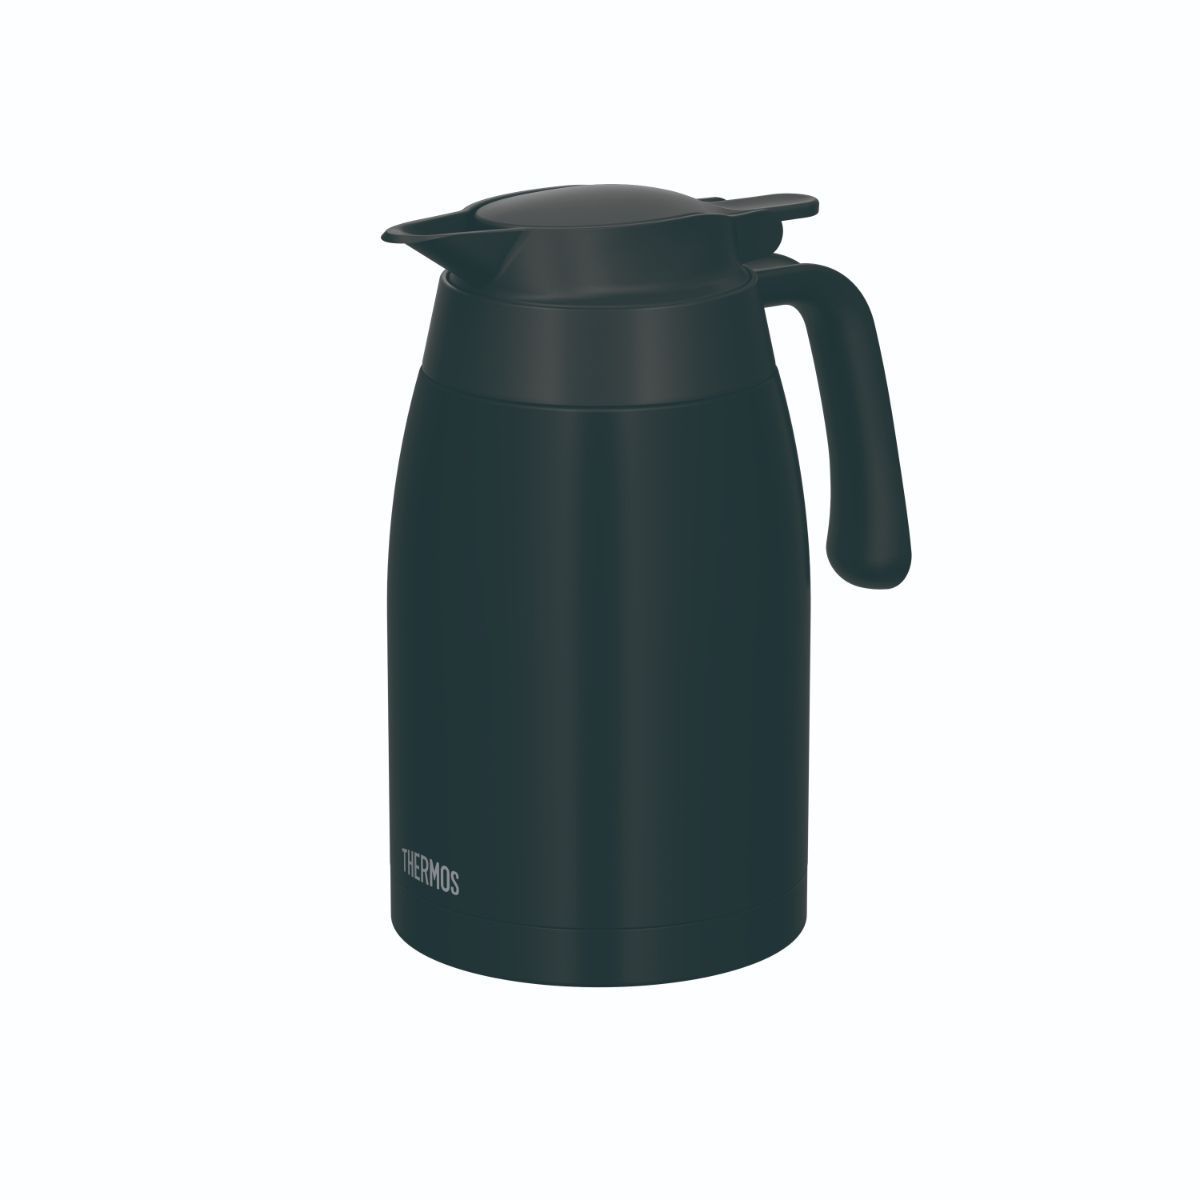 THERMOS ステンレスポット マットブラック 1.5L ステンレス 保温 保冷 丸洗イ可 軽量 コンパクト オ茶 コーヒー